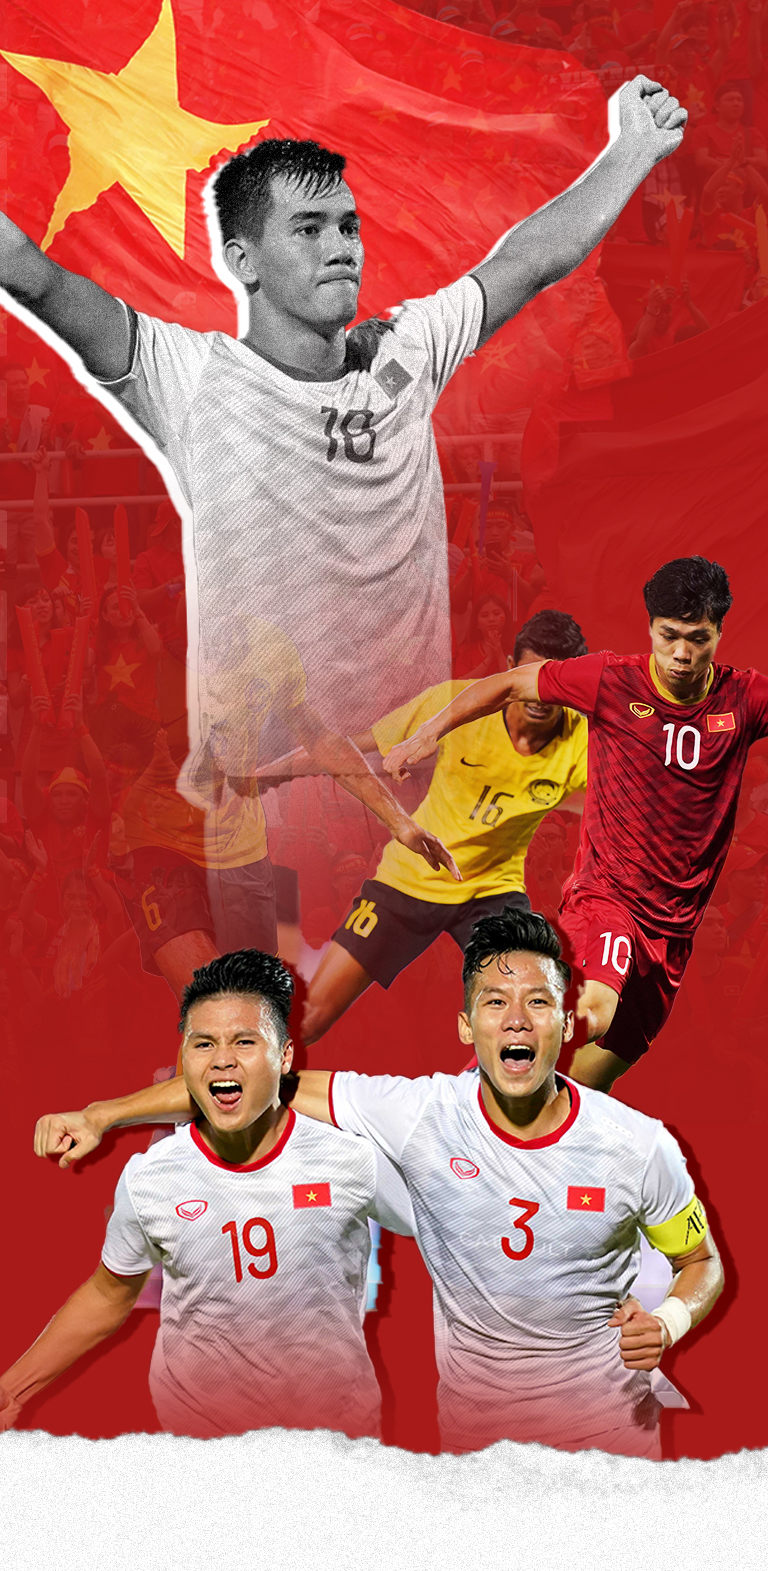 Bóng đá Việt Nam là một trong những niềm tự hào của quốc gia. Hãy tiếp thêm động lực cho tinh thần cầu môn bằng cách xem hình ảnh bóng đá Việt Nam và cảm nhận sự cổ vũ và nhiệt huyết của người hâm mộ.